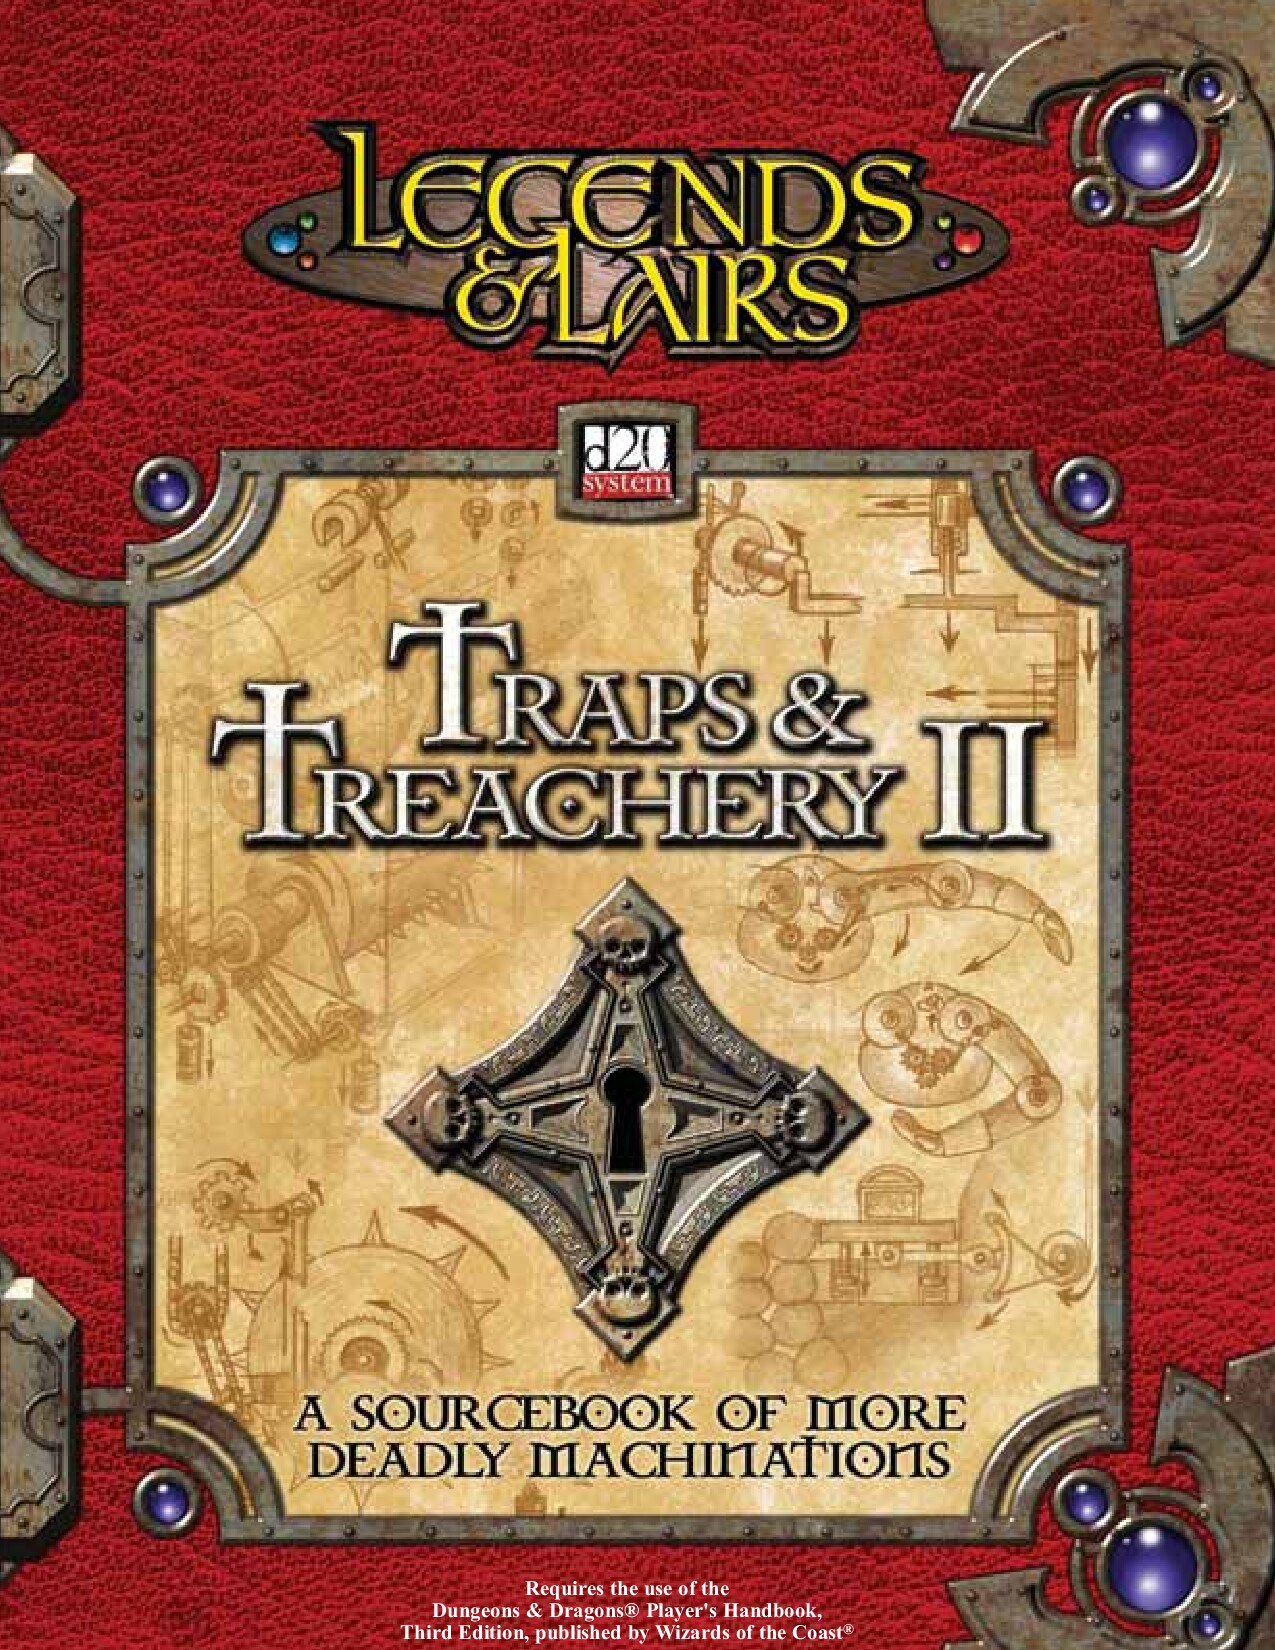 Traps & Treachery II